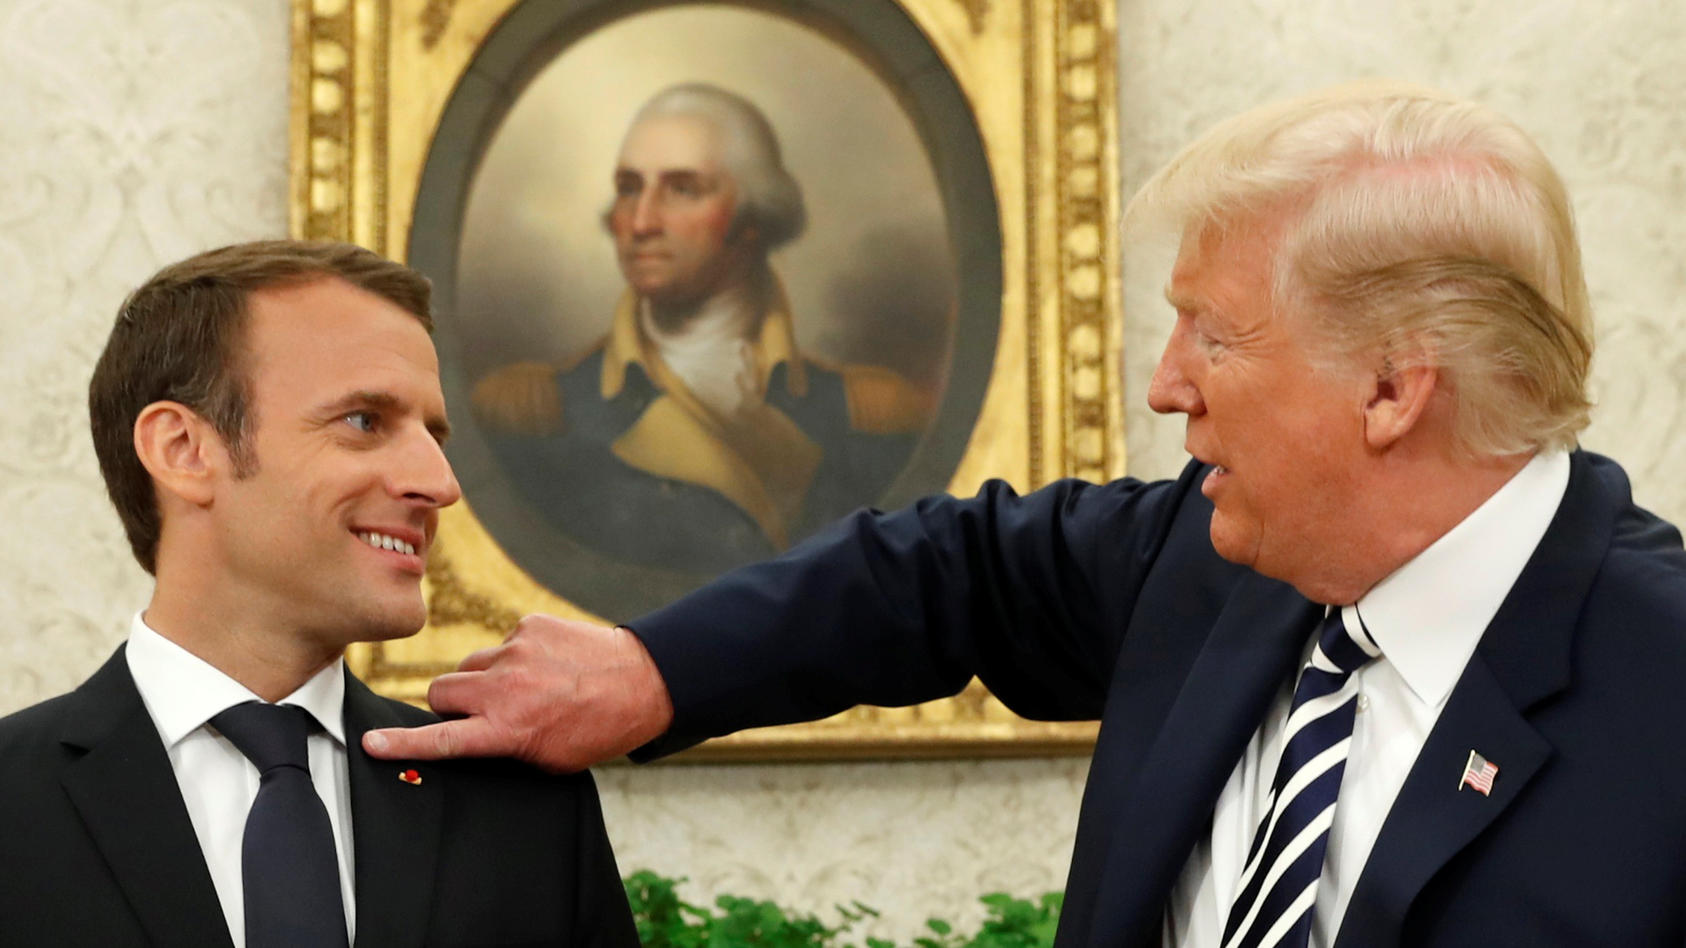 "Du hast da was!", Trump wischt Macron die vermeintlichen Schuppen von der Schulter.